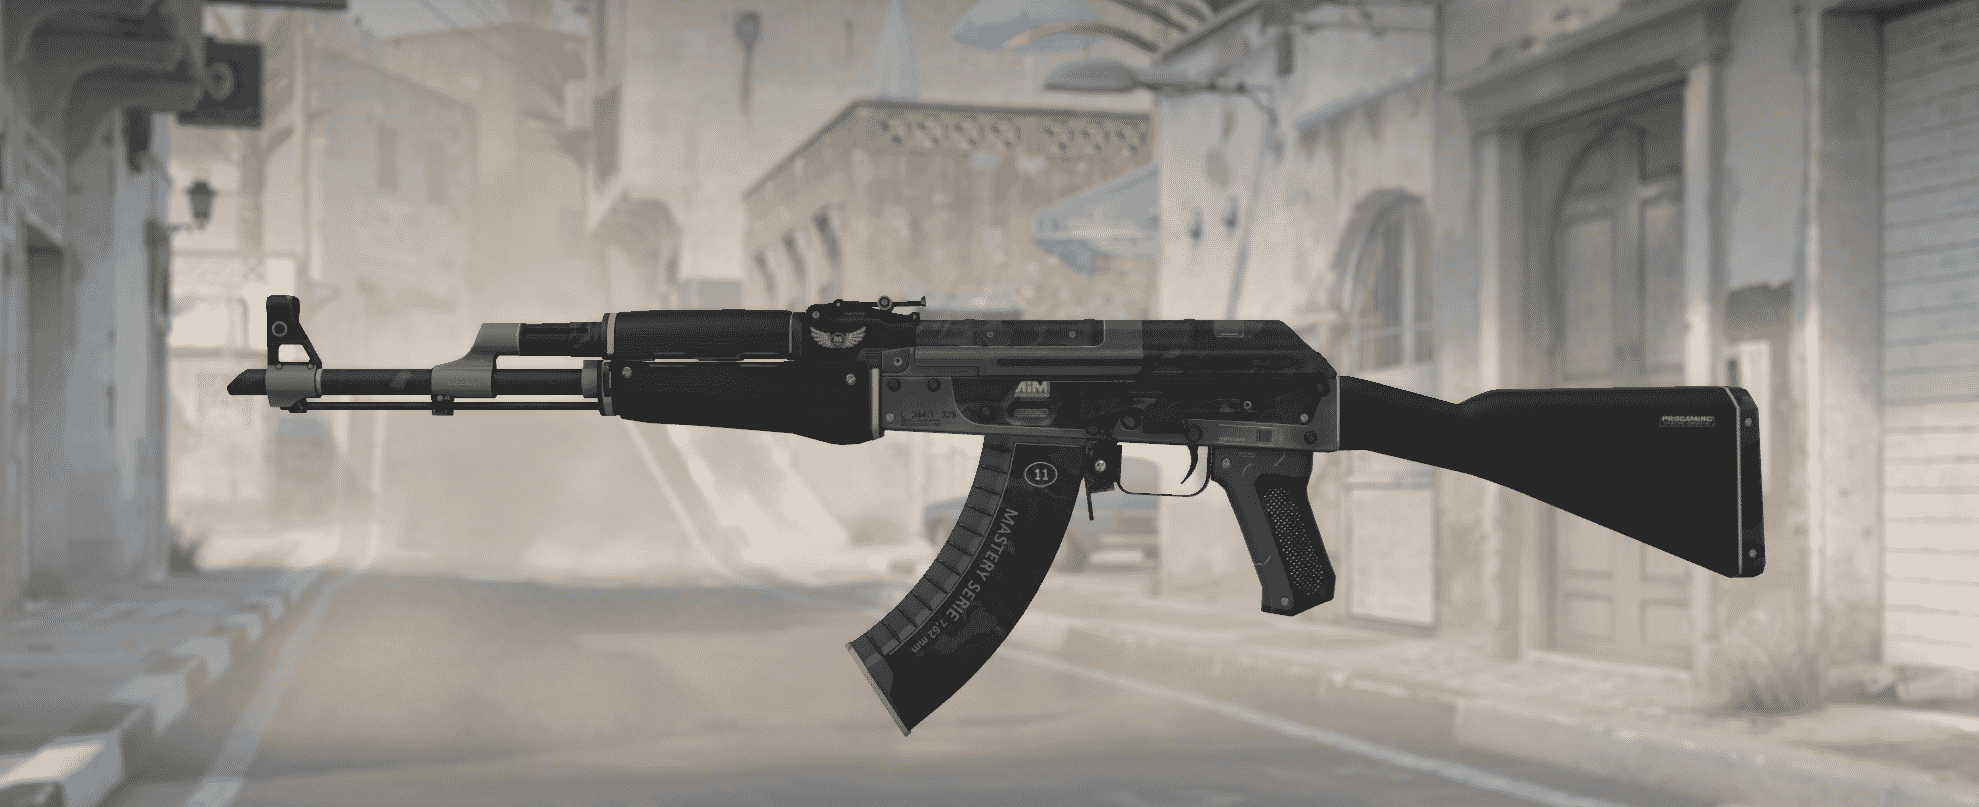 Construção de Elite AK-47